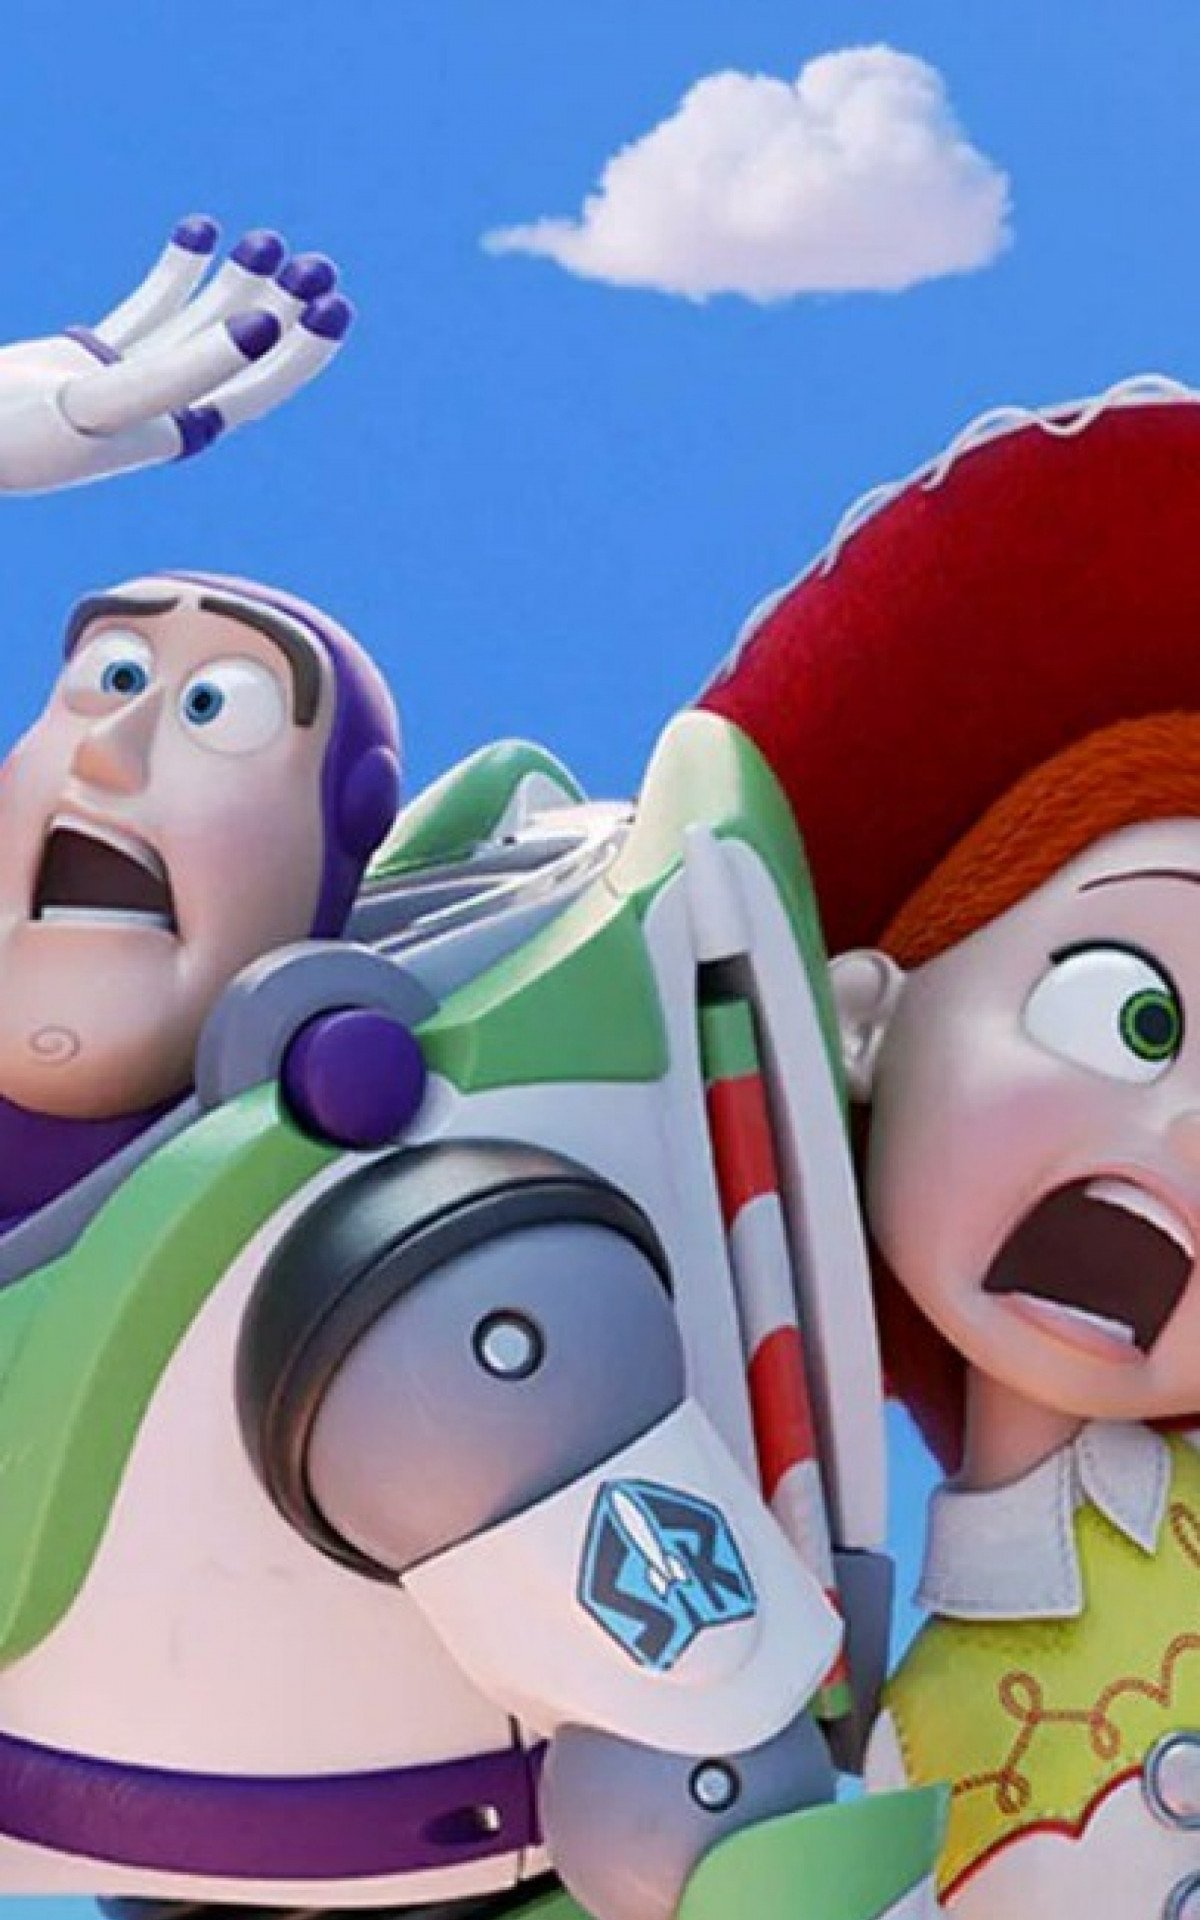 Disney anuncia Frozen 3, Toy Story 5 e Zootopia 2